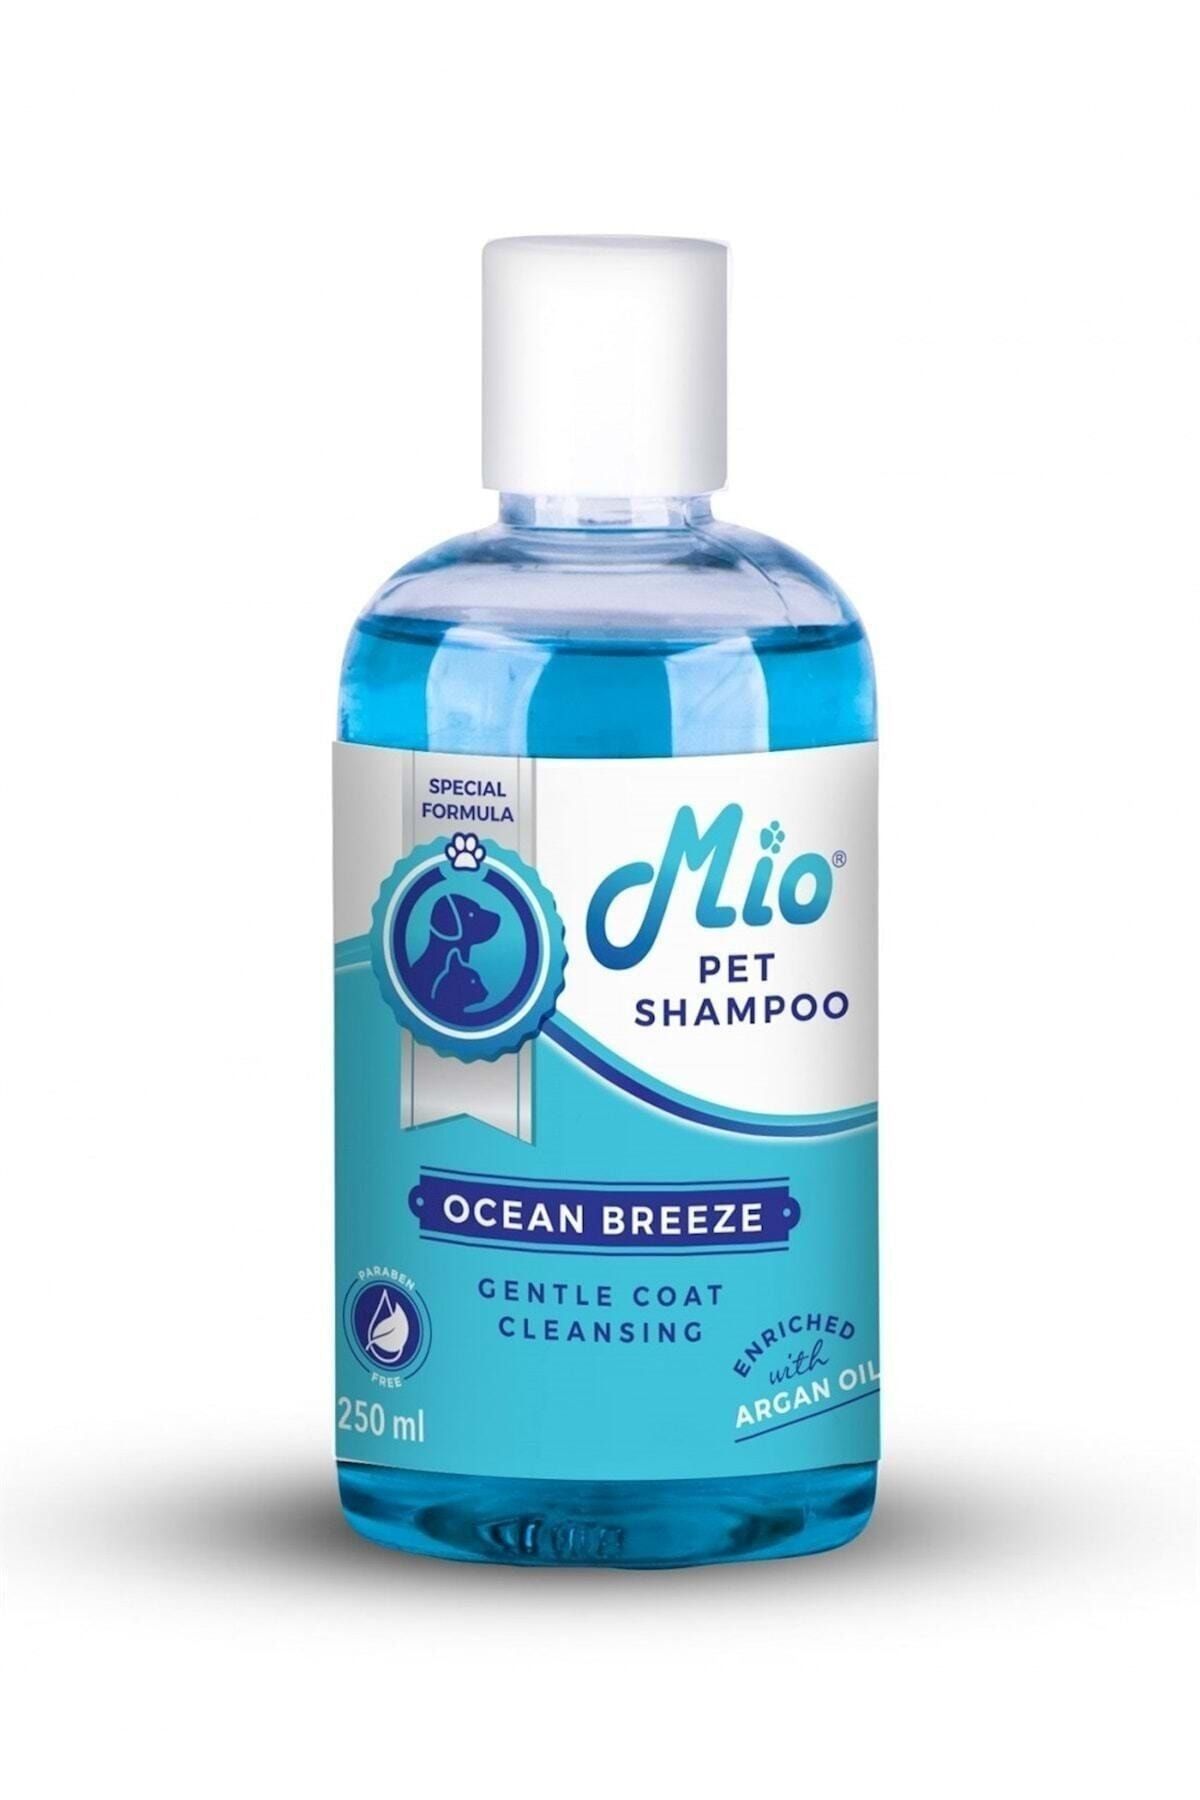 Mio Okyanus Esintisi Kokulu Kedi Köpek Sıvı Şampuan 250 ml